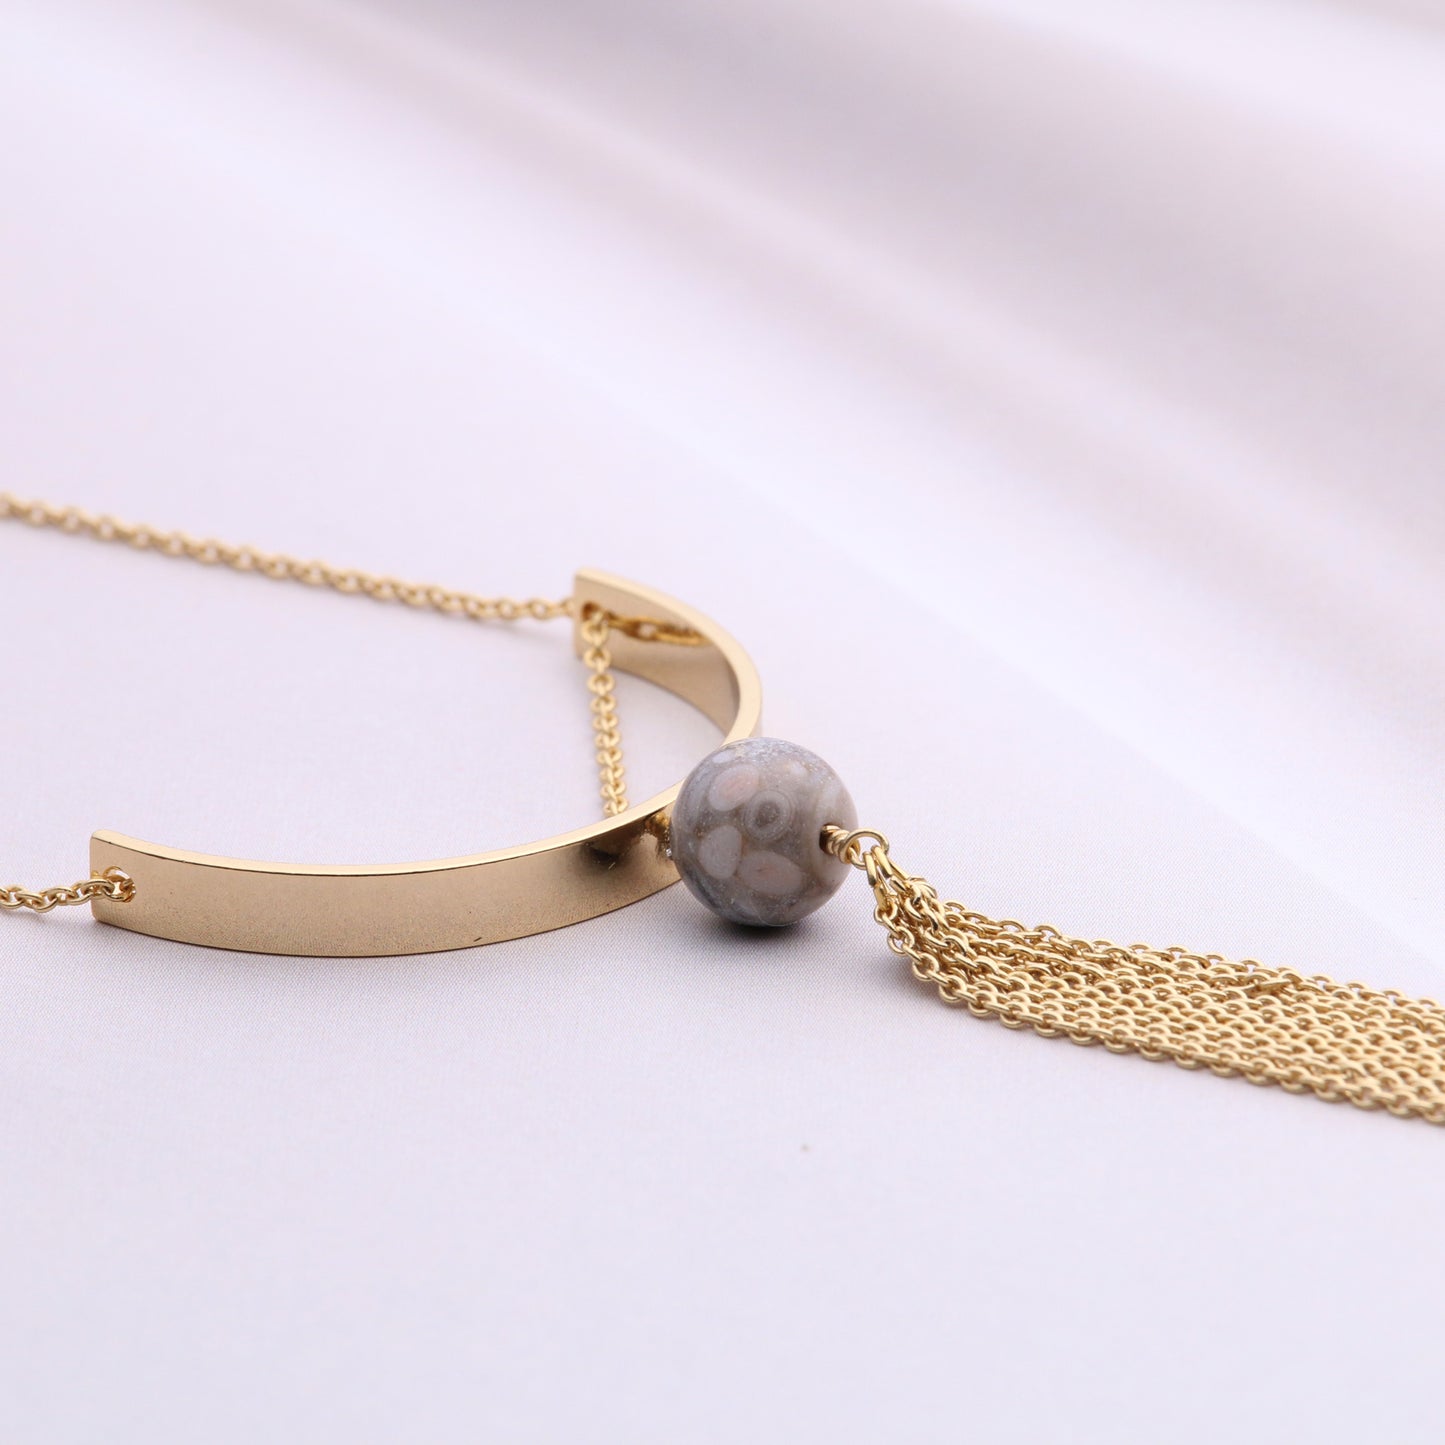 Jasper, metal motif and chain tassel necklace